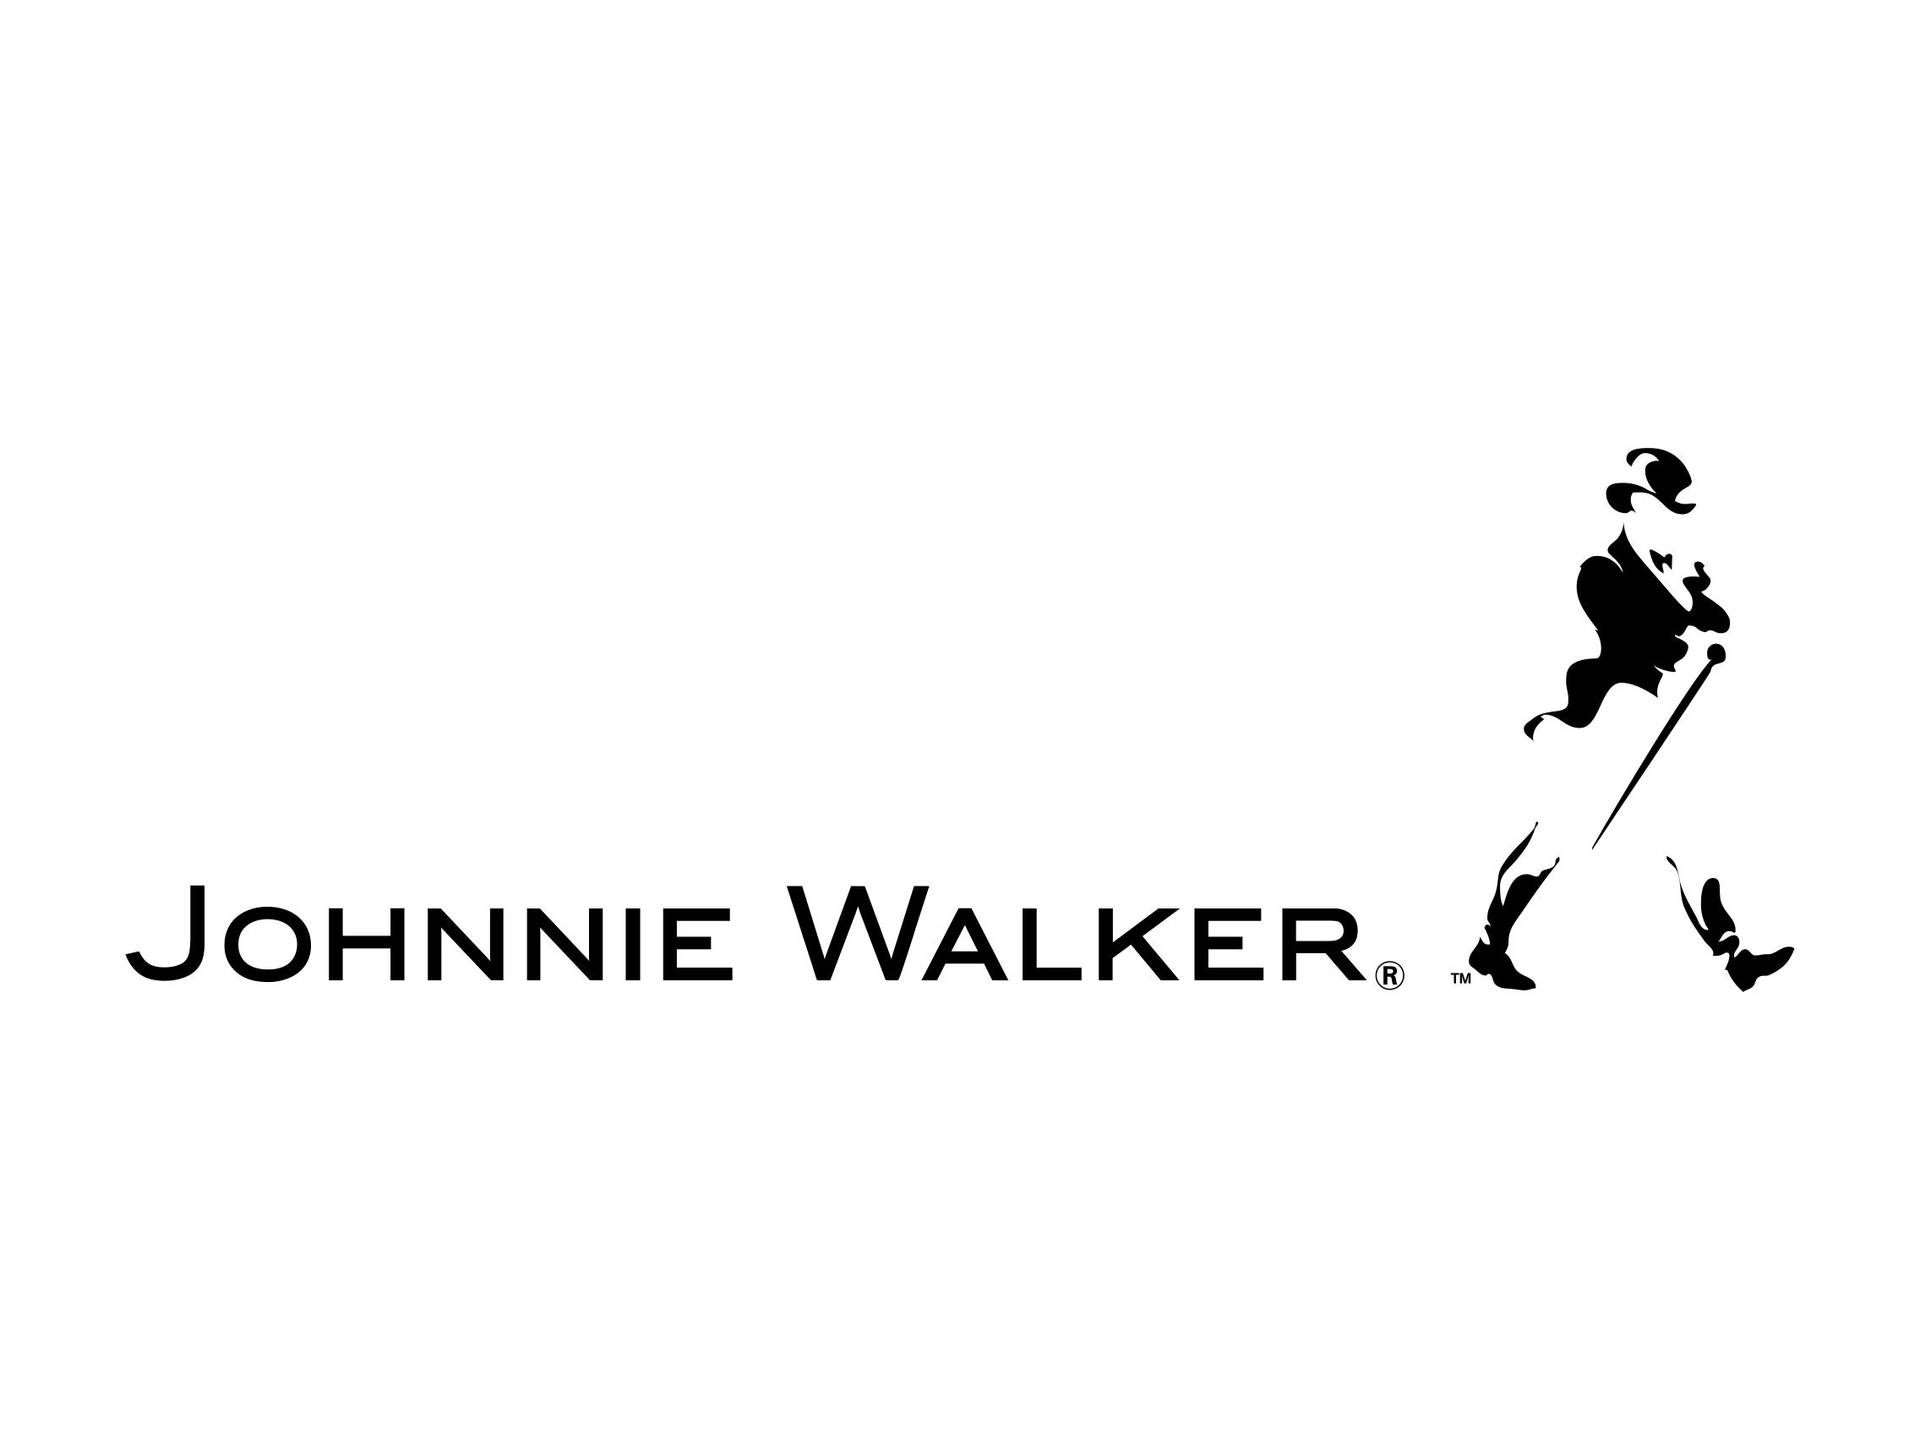 johnnie walker logo black